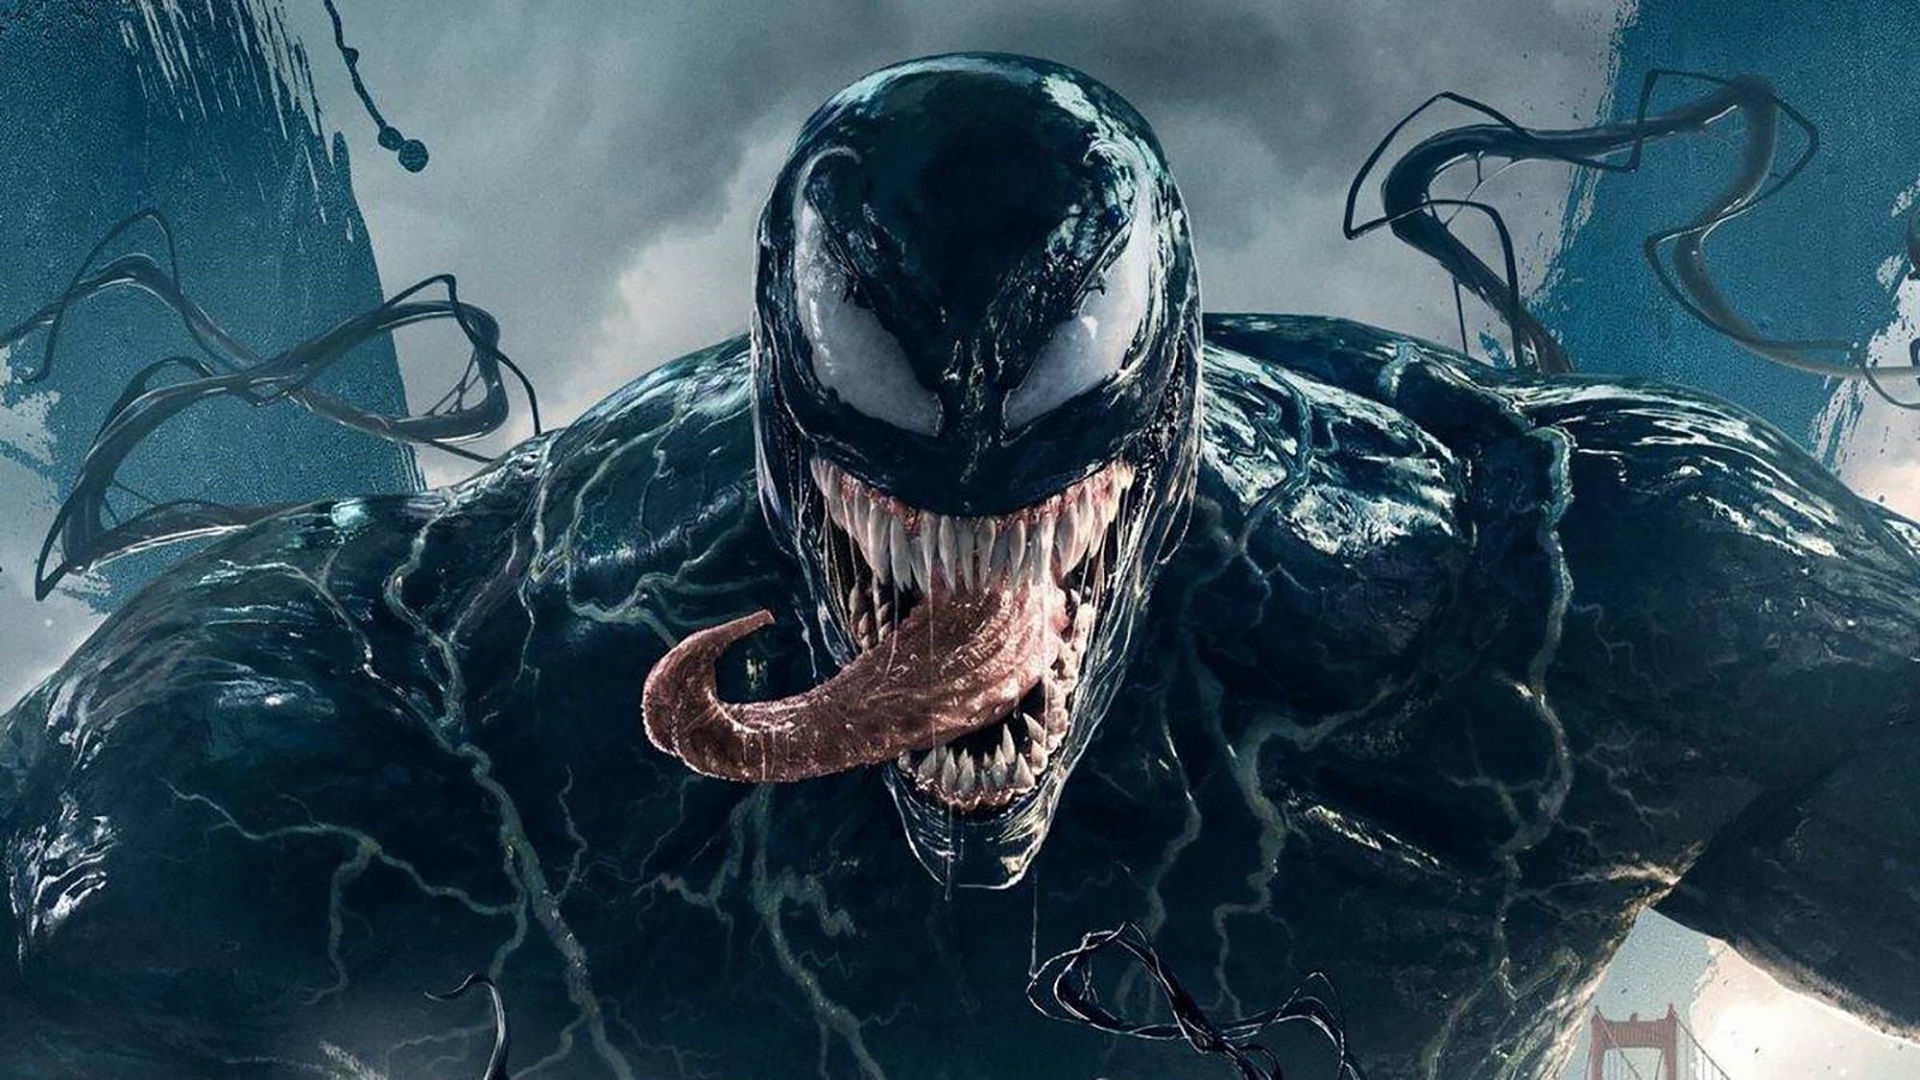 En symbiose af film og videnskab: En ny art af giftige edderkopper er blevet opdaget i Australien og opkaldt efter Marvels antihelt Tom Hardy.